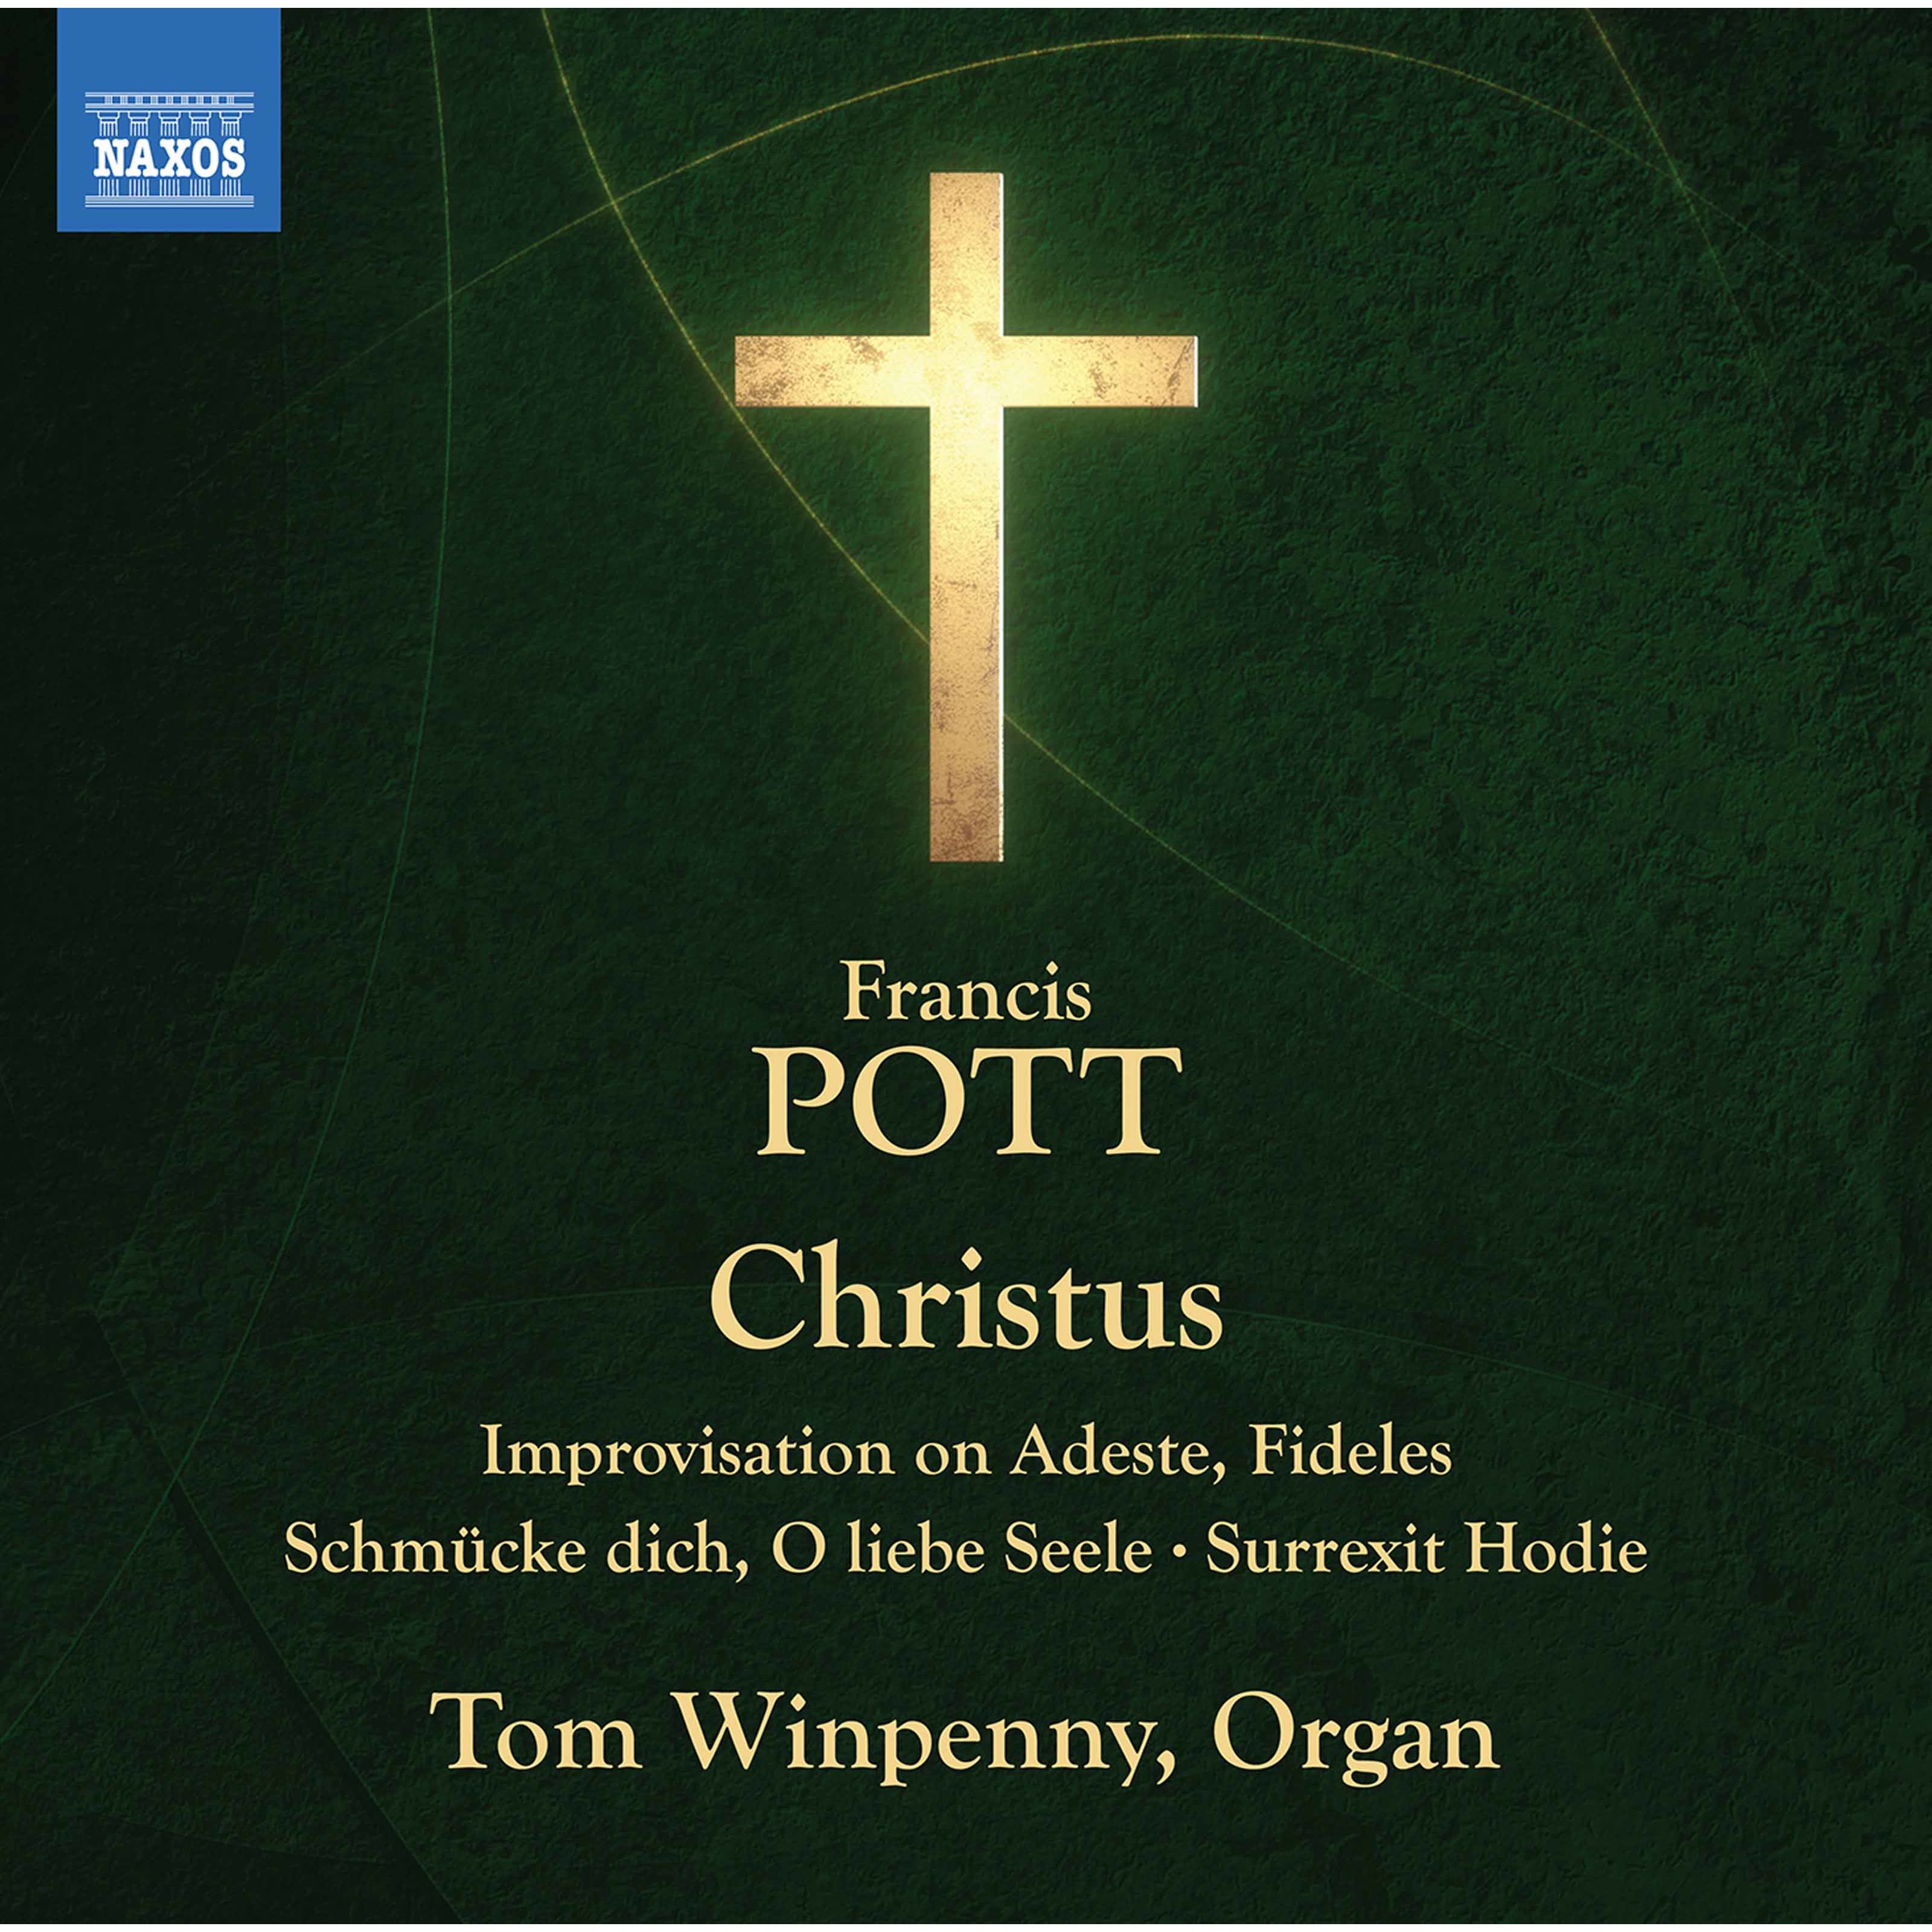 Tom Winpenny – Pott- Christus & Other Works